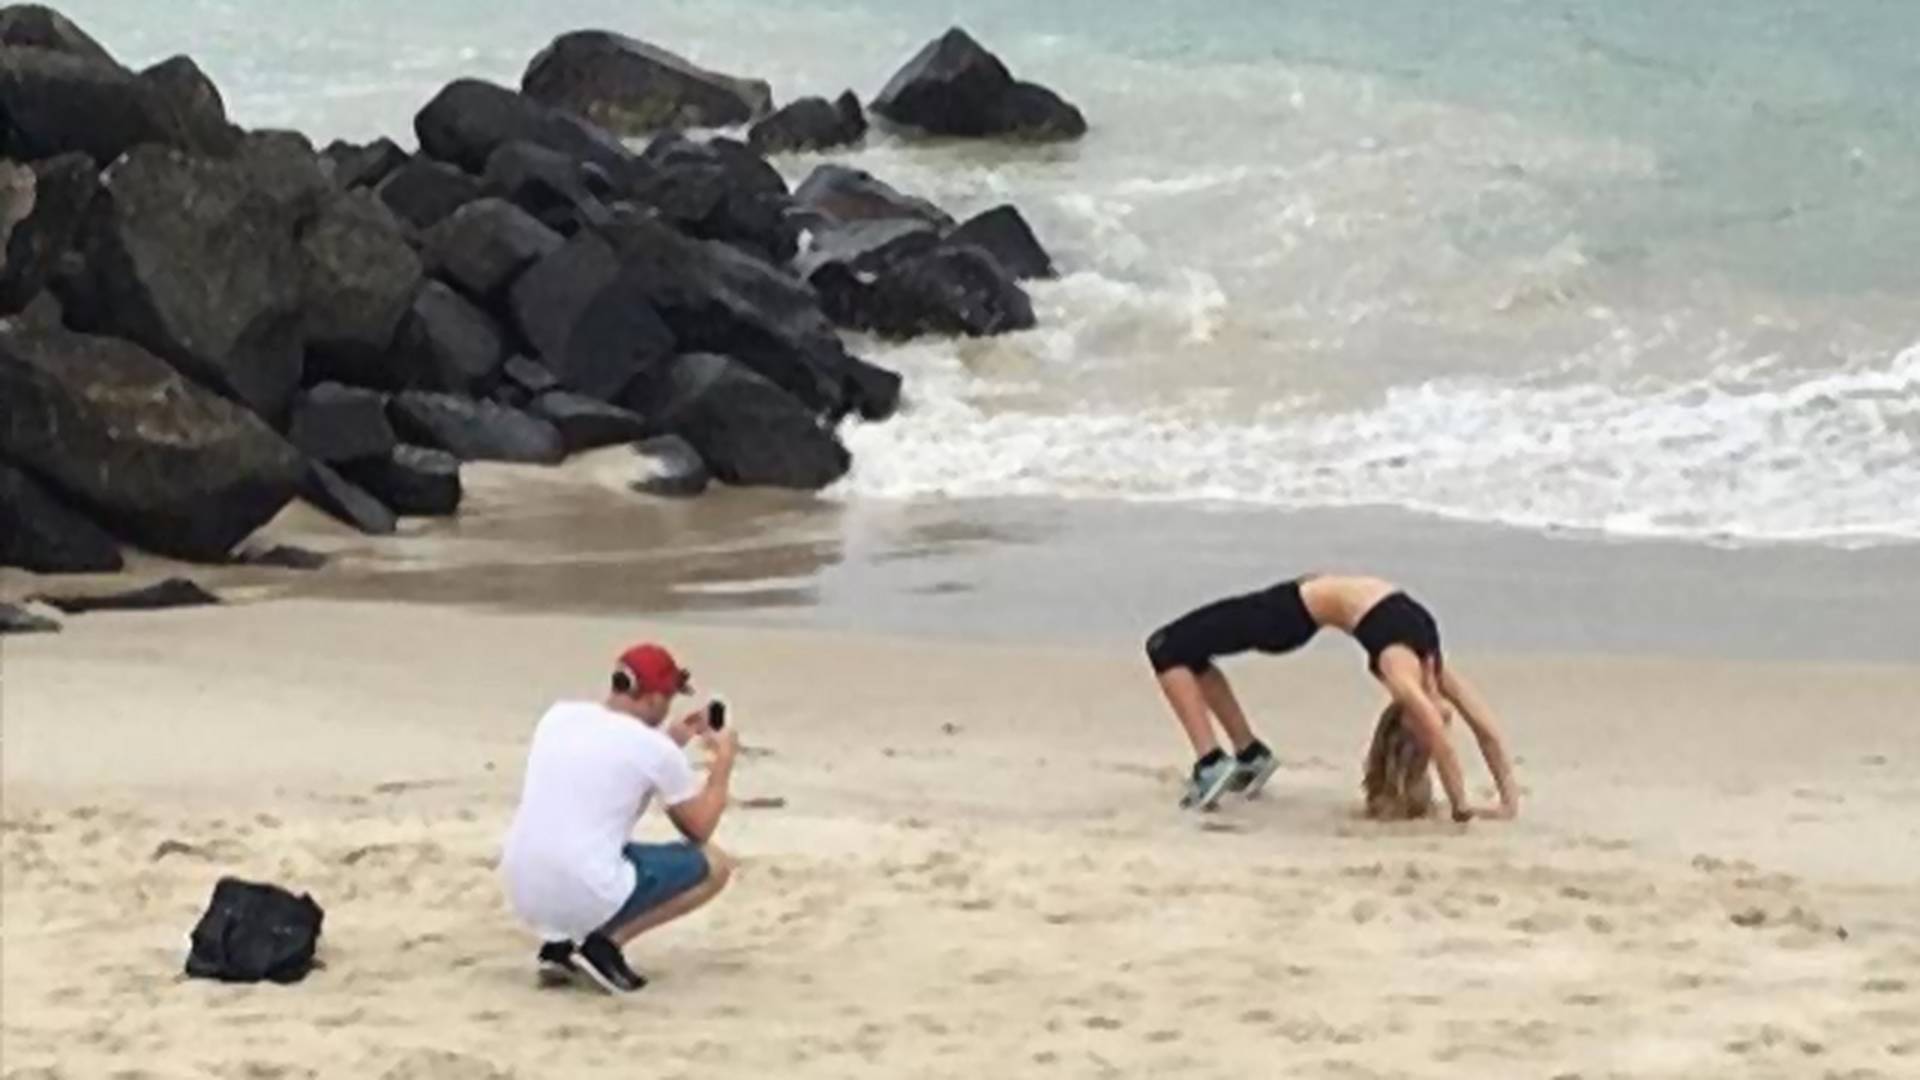 Faceci robiący fotki swoim dziewczynom na plaży, doczekali się swojego fanpage'a